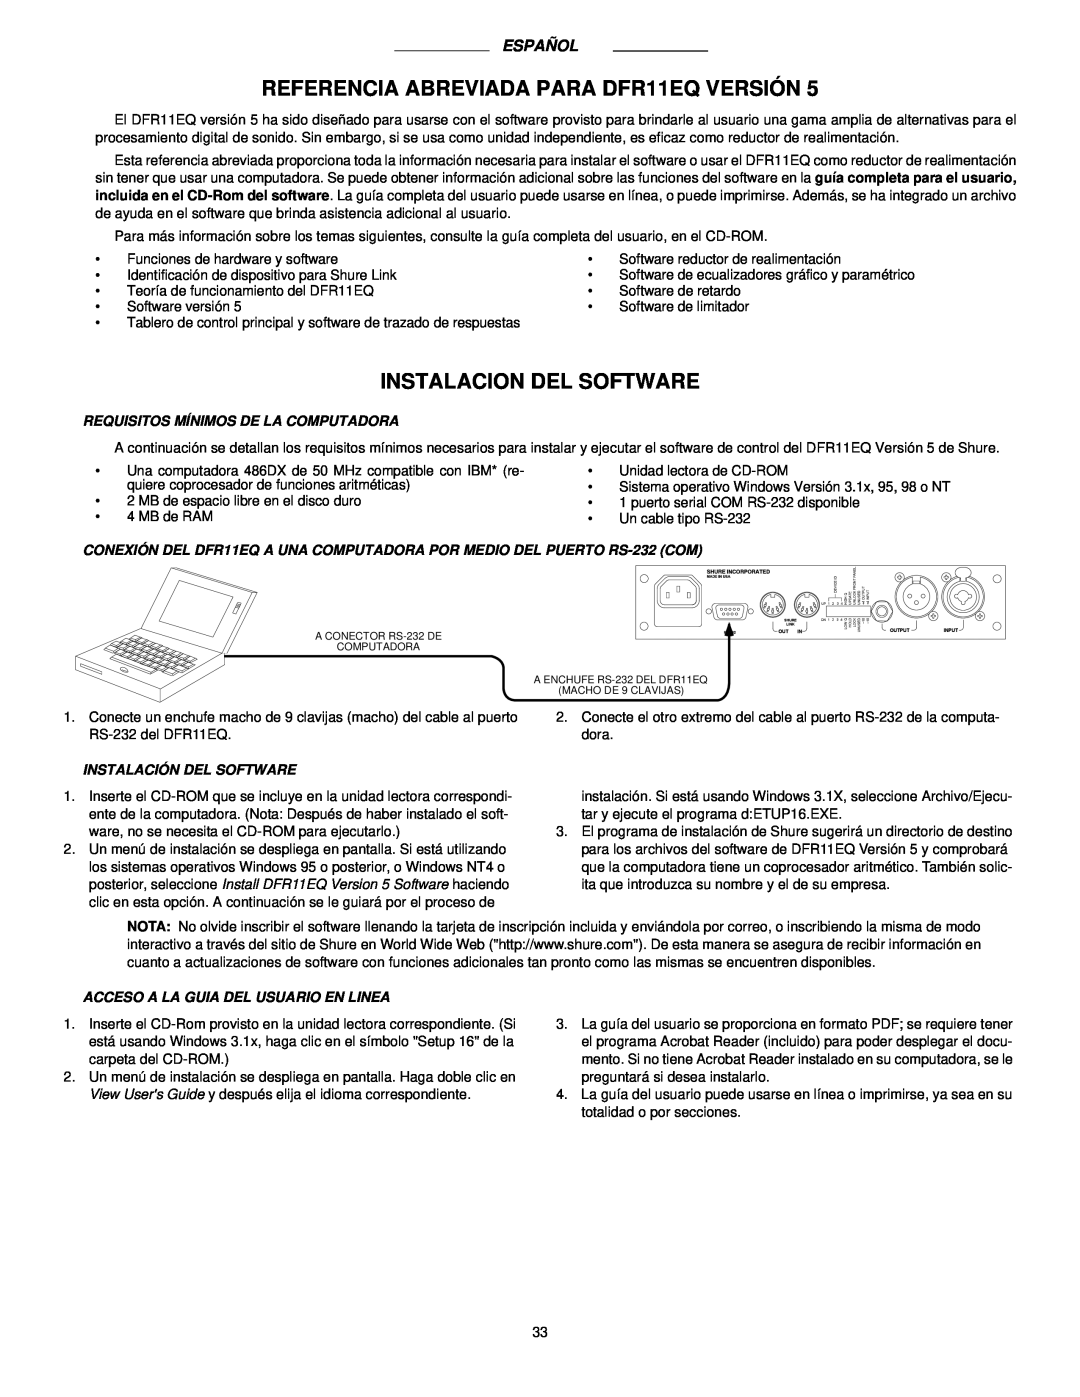 Shure manual REFERENCIA ABREVIADA PARA DFR11EQ VERSIÓN, Instalacion Del Software, Español 